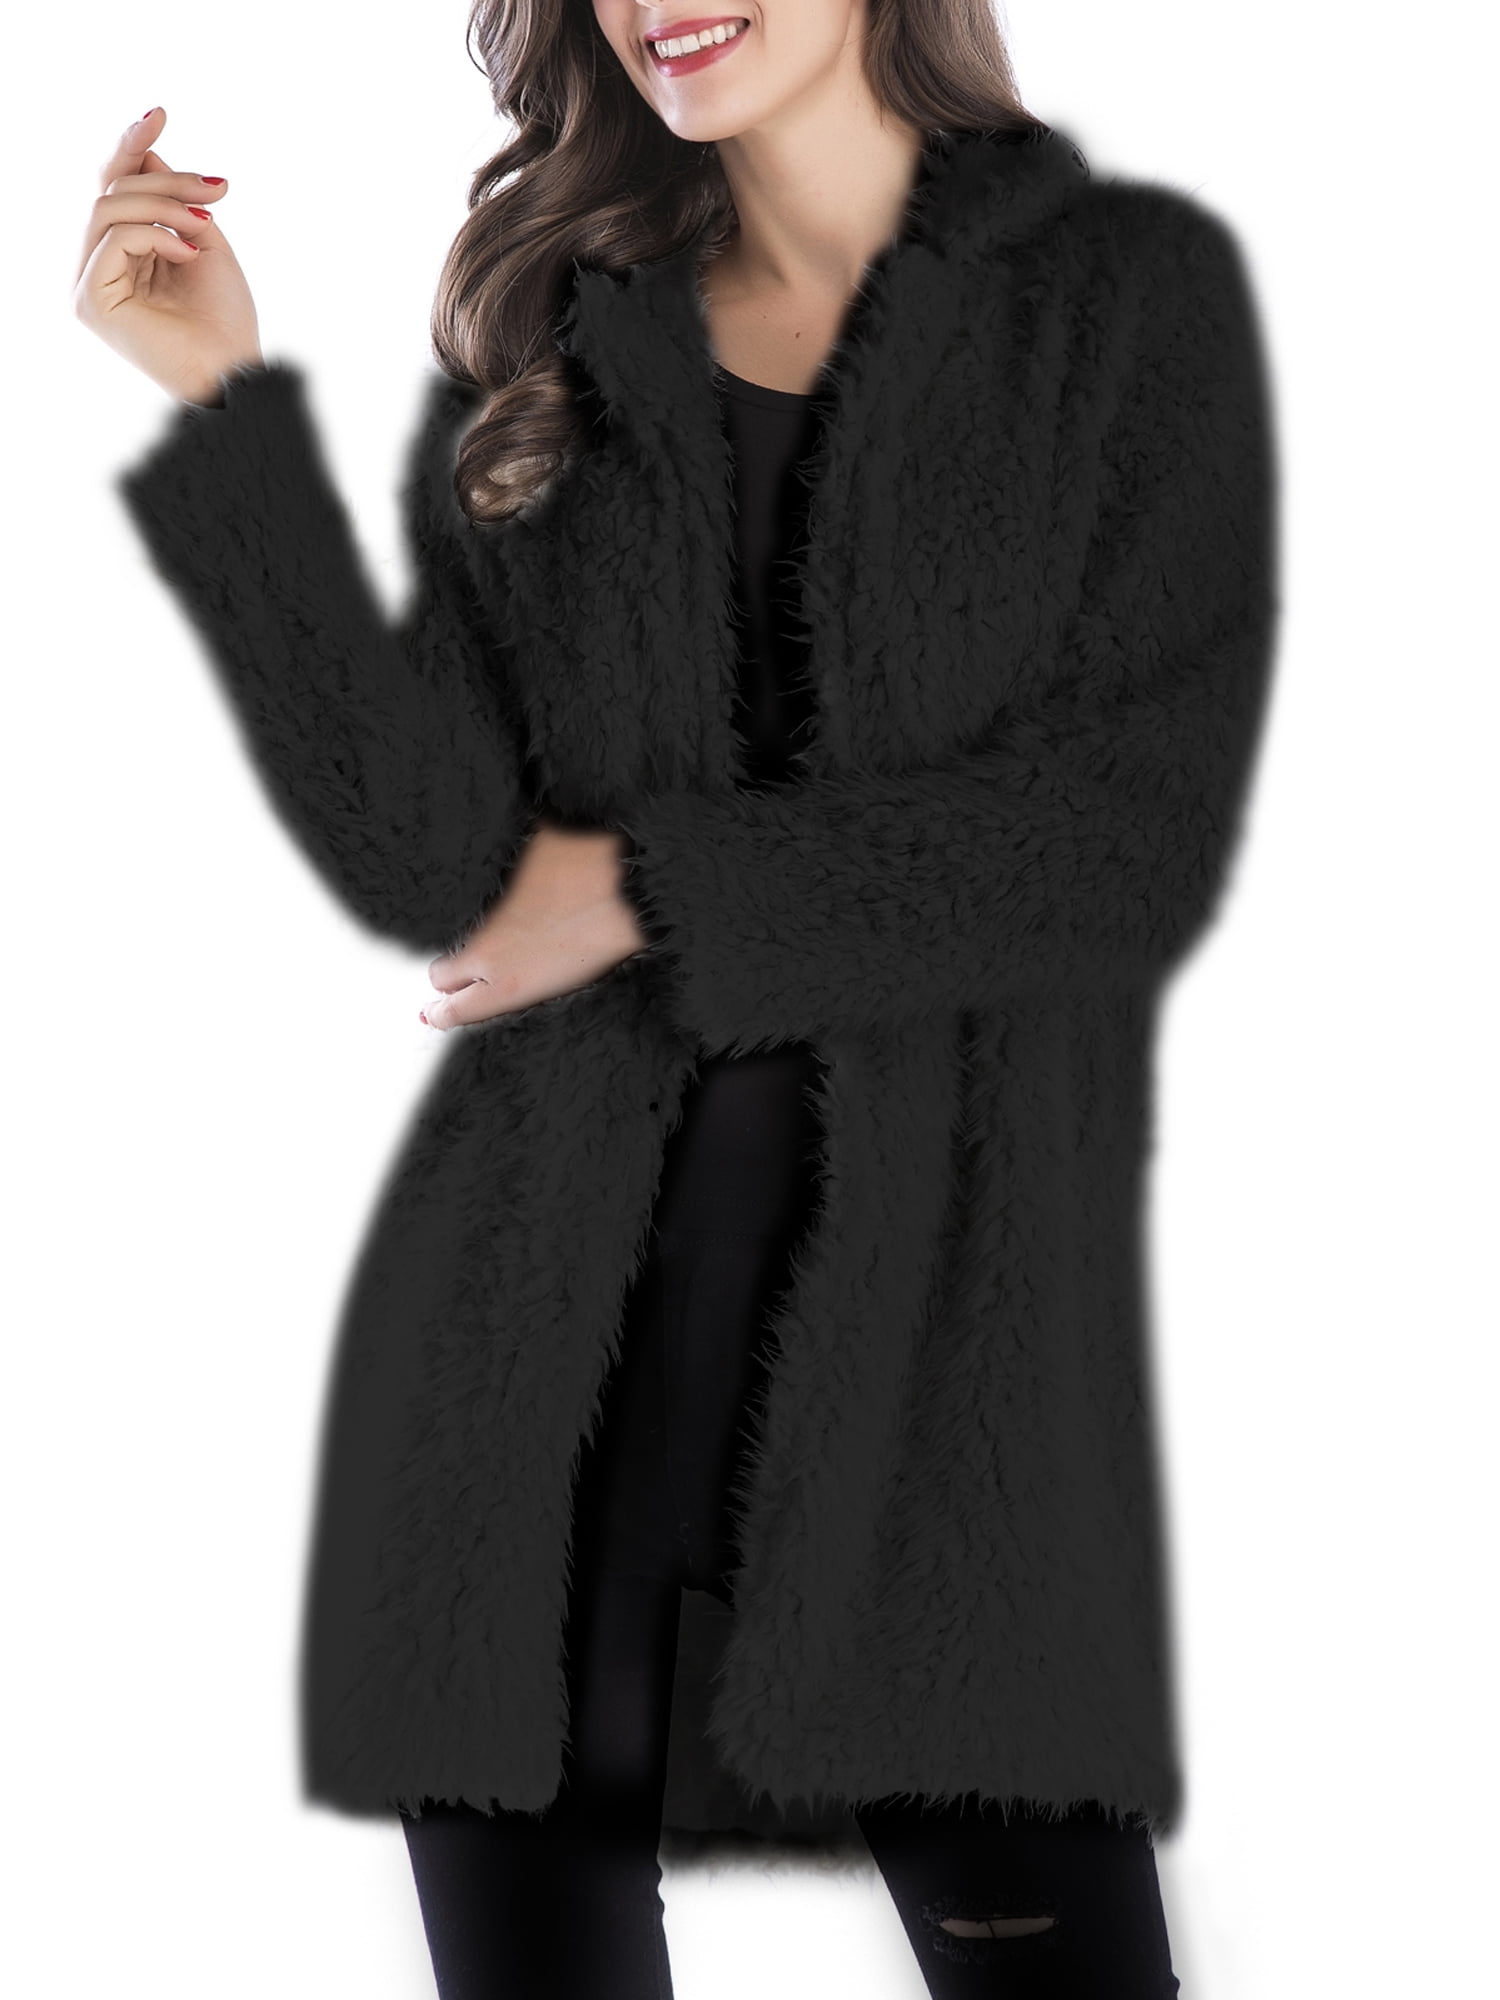 Balakie Womens Fuzzy Fleece Jacket Vest Vintage Open Front Fluffly Cardigan Coat Outwear with Pockets